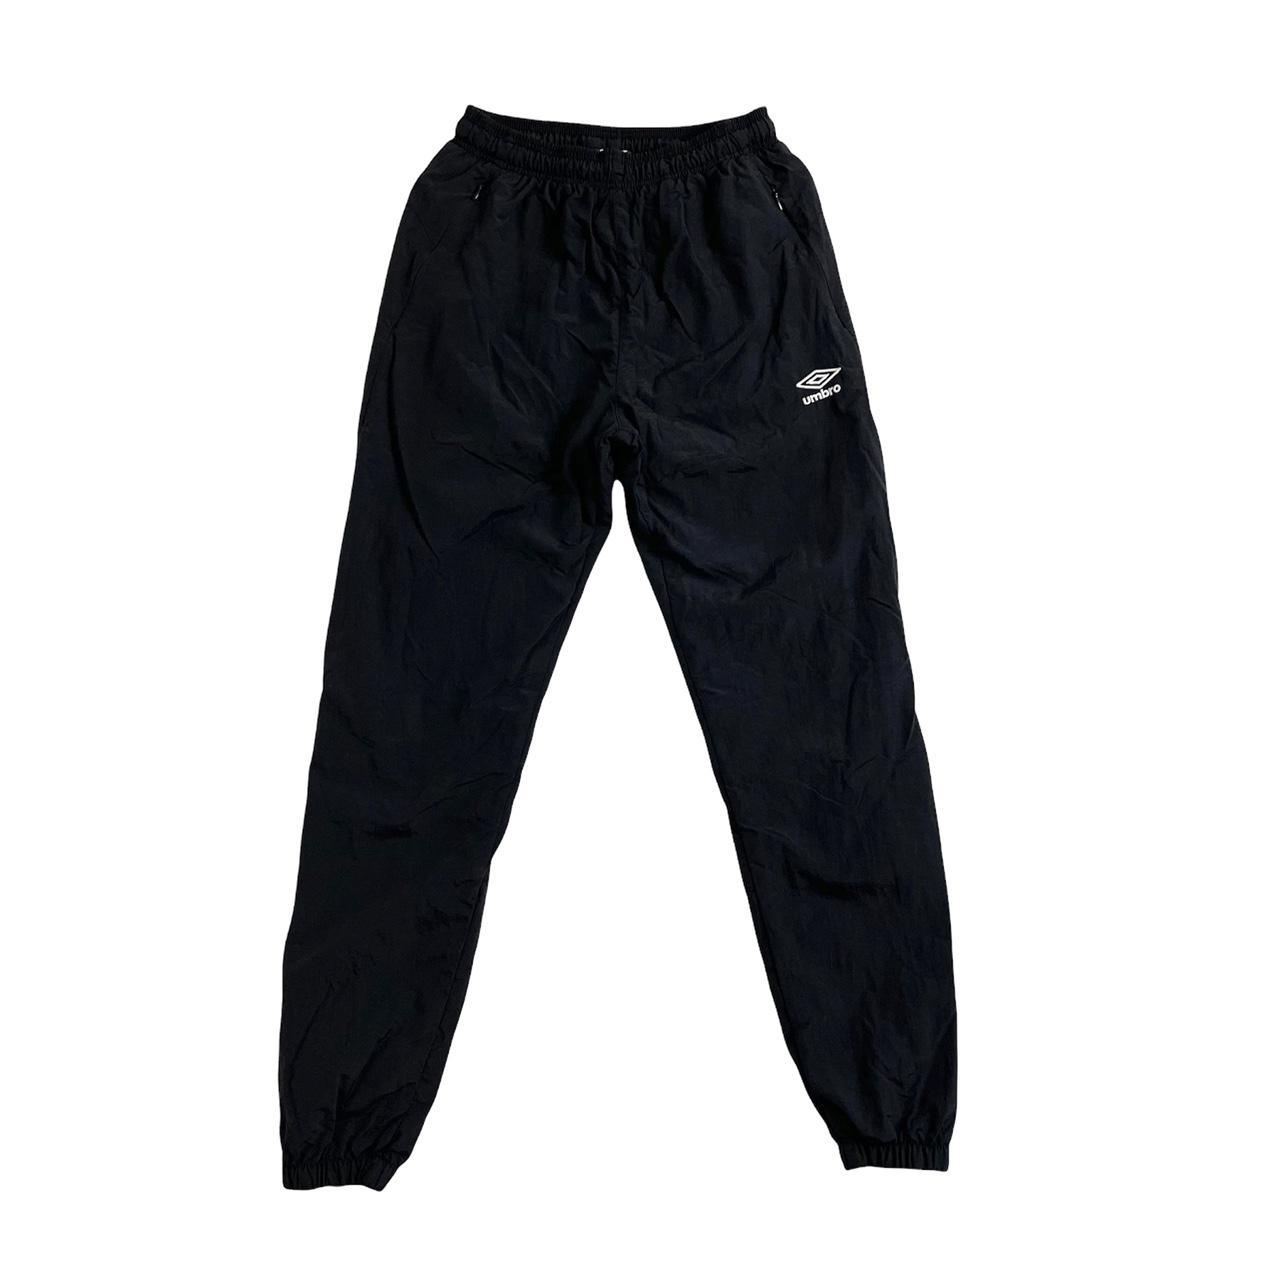 Umbro jogger long pants with fleece lining sooooo - Depop